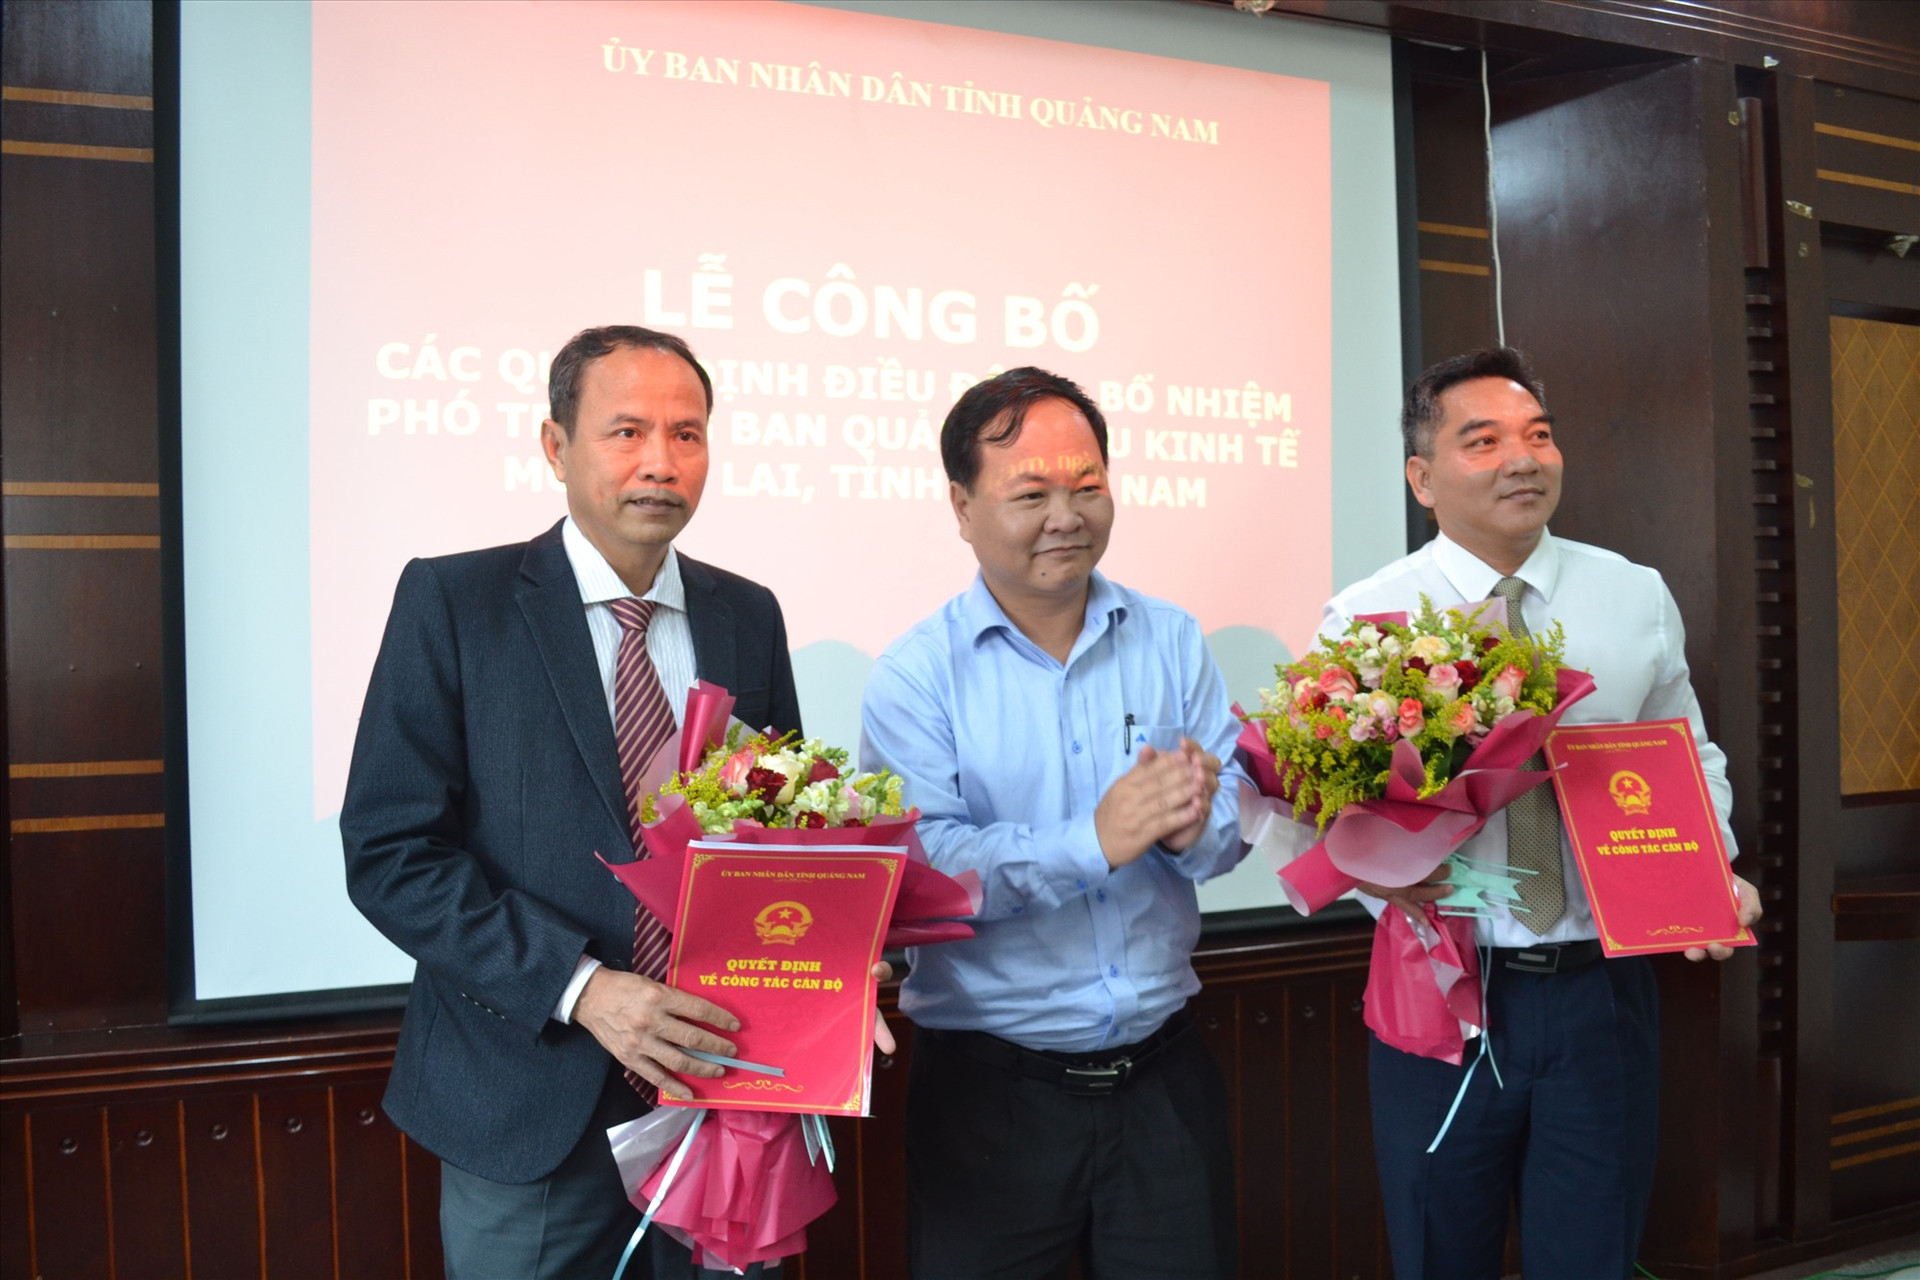 Phó Chủ tịch UBND tỉnh Nguyễn Hồng Quang trao quyết định về công tác cán bộ đối với ông Thiều Việt Dũng và ông Lê Quang Triều. Ảnh: VIỆT NGUYỄN